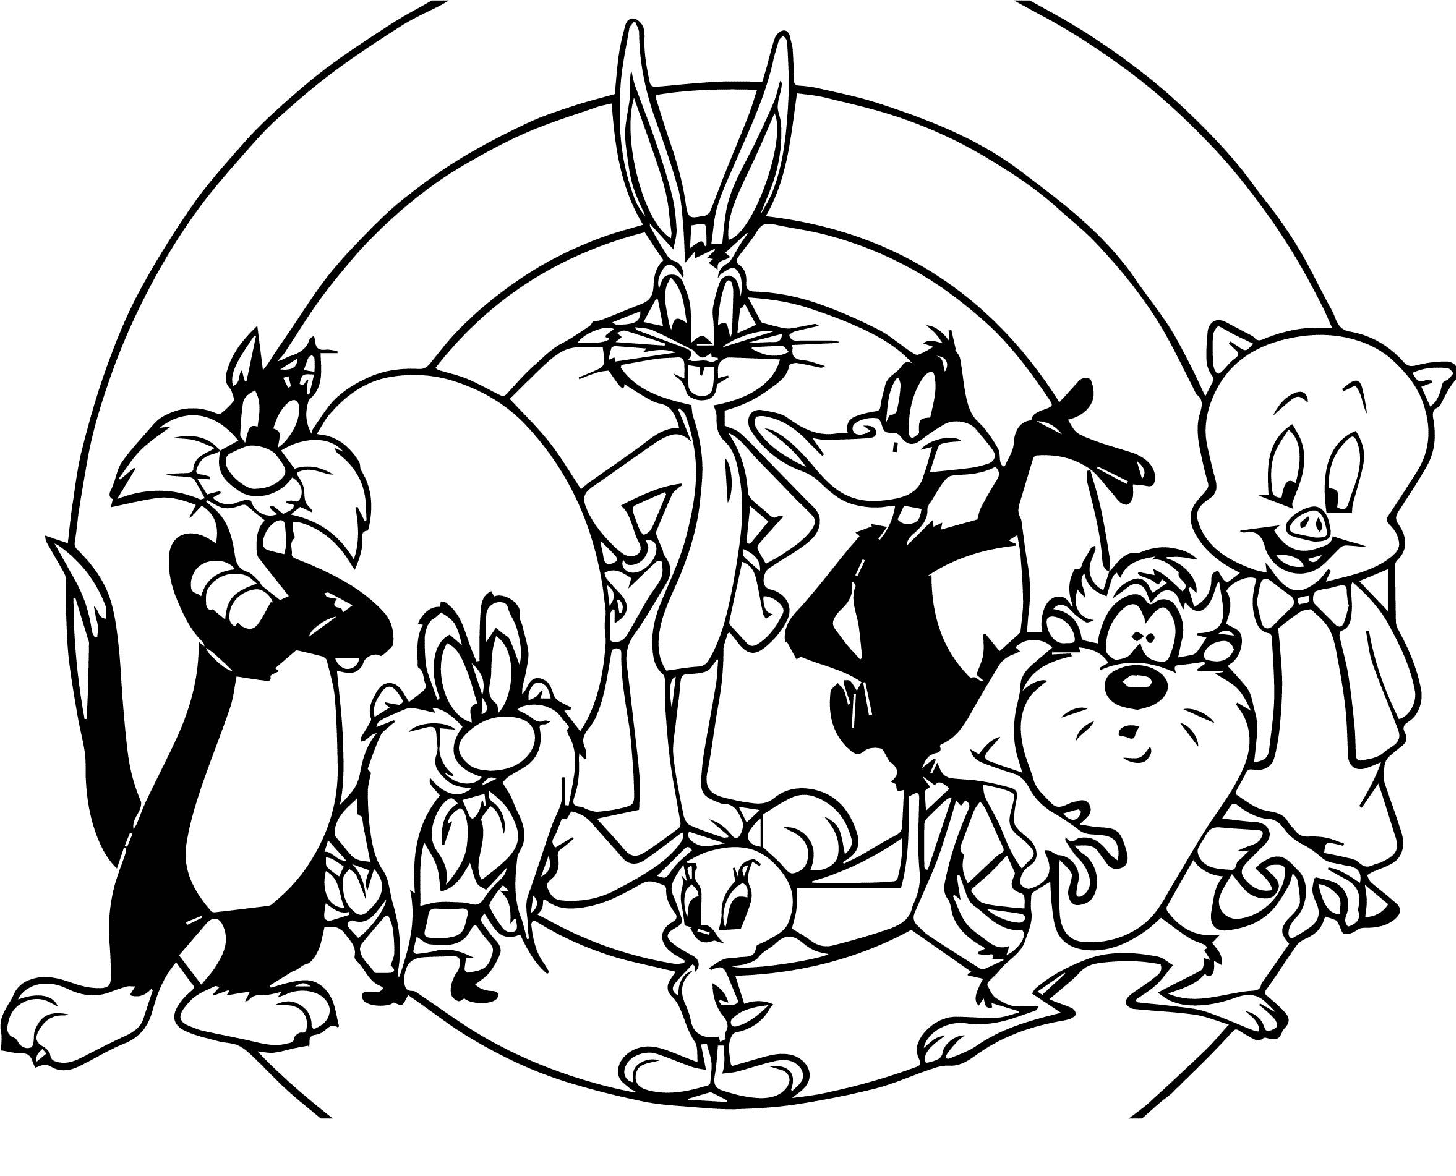 乐一通 (Looney Tunes) 中的所有角色